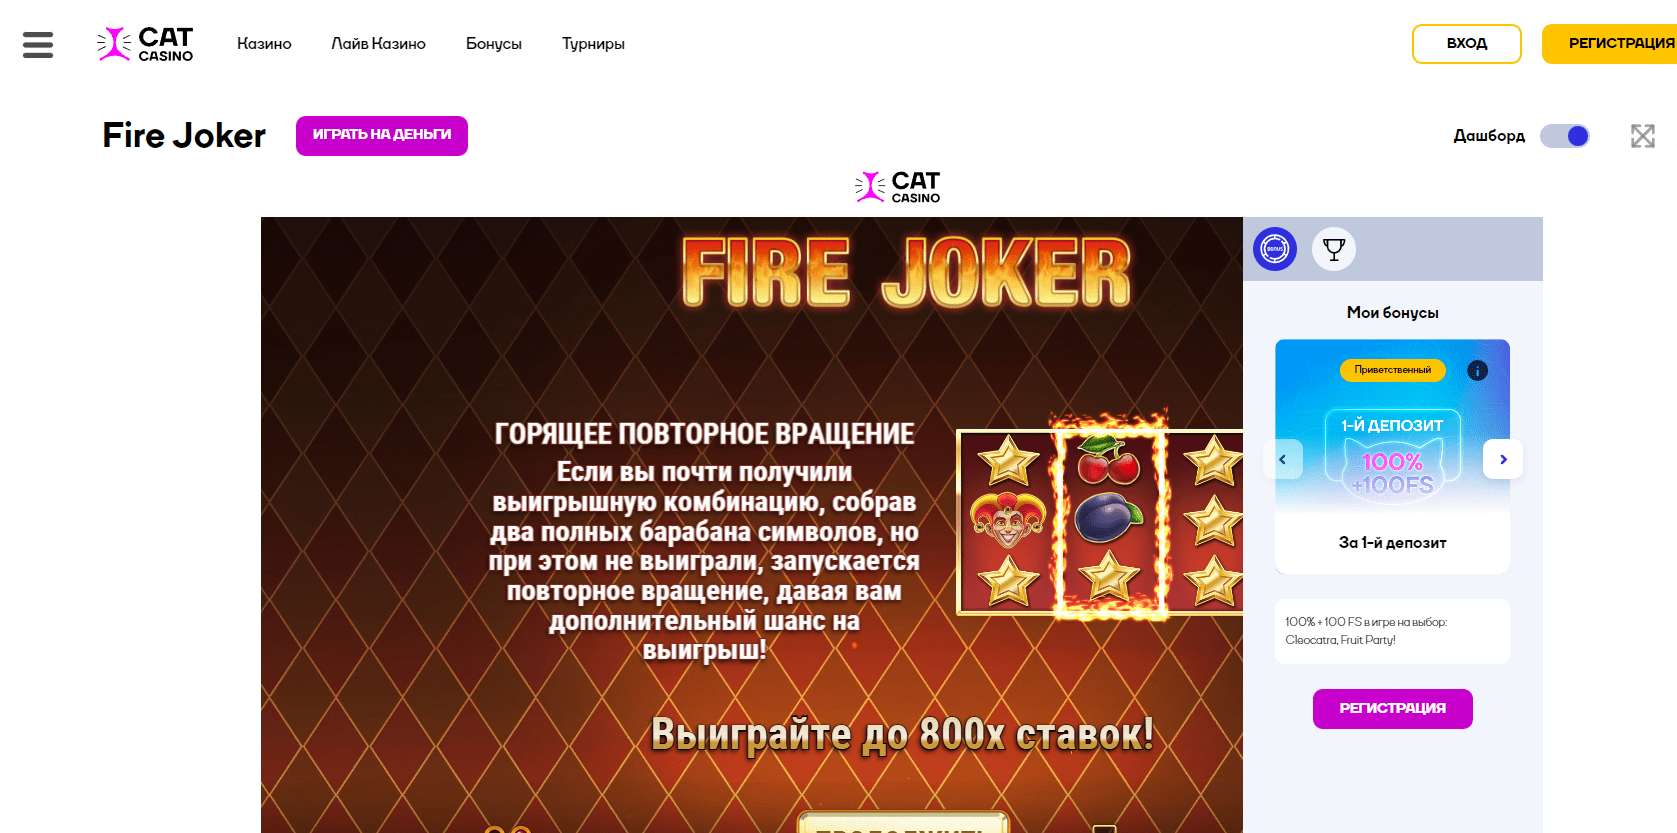 Fire joker online в Cat casino